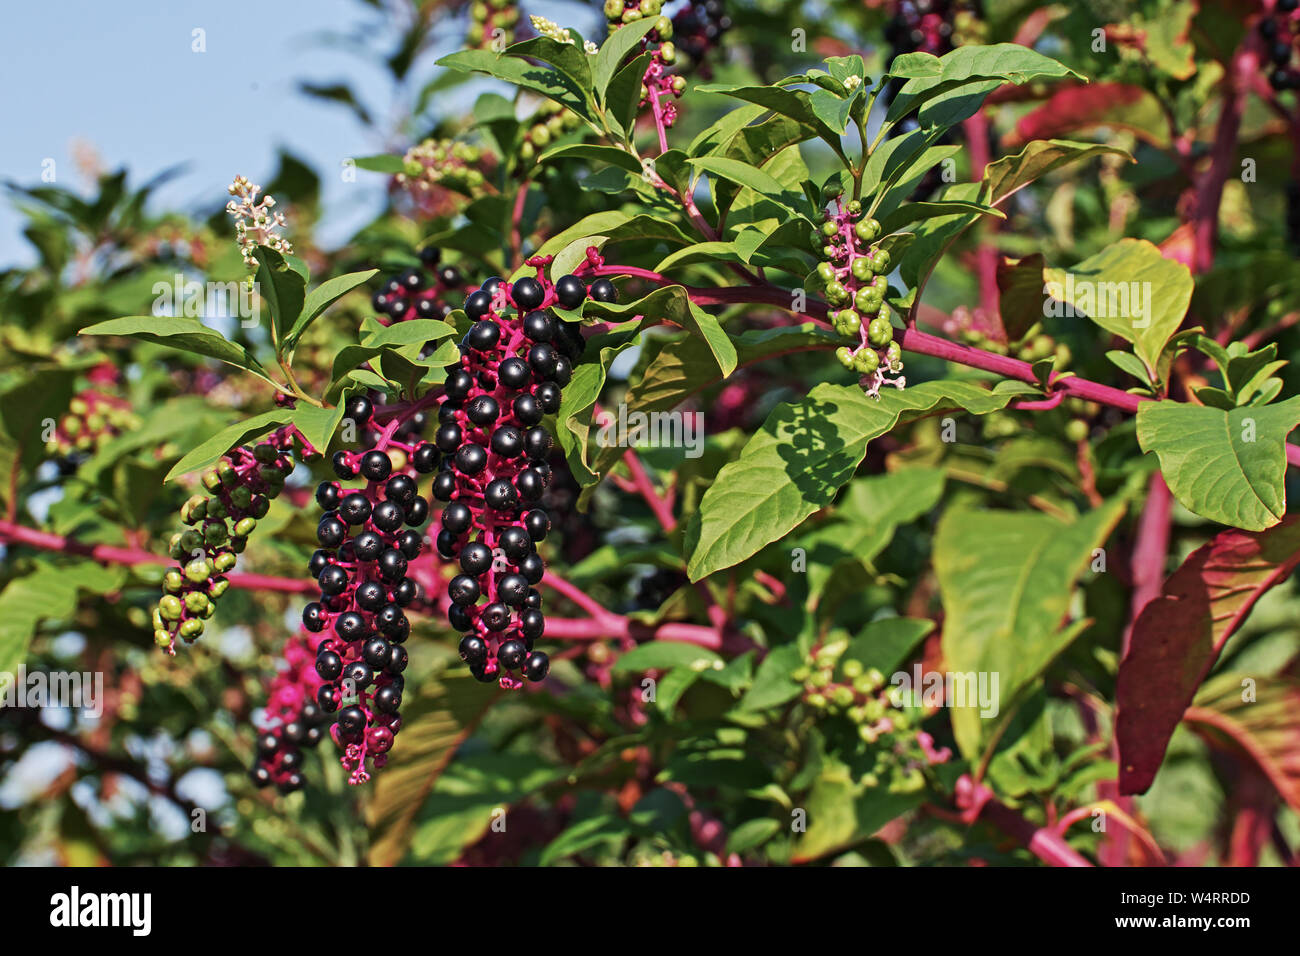 Foglie, fiori, frutti immaturi e bacche mature di american pokeweed, phytolacca americana Foto Stock